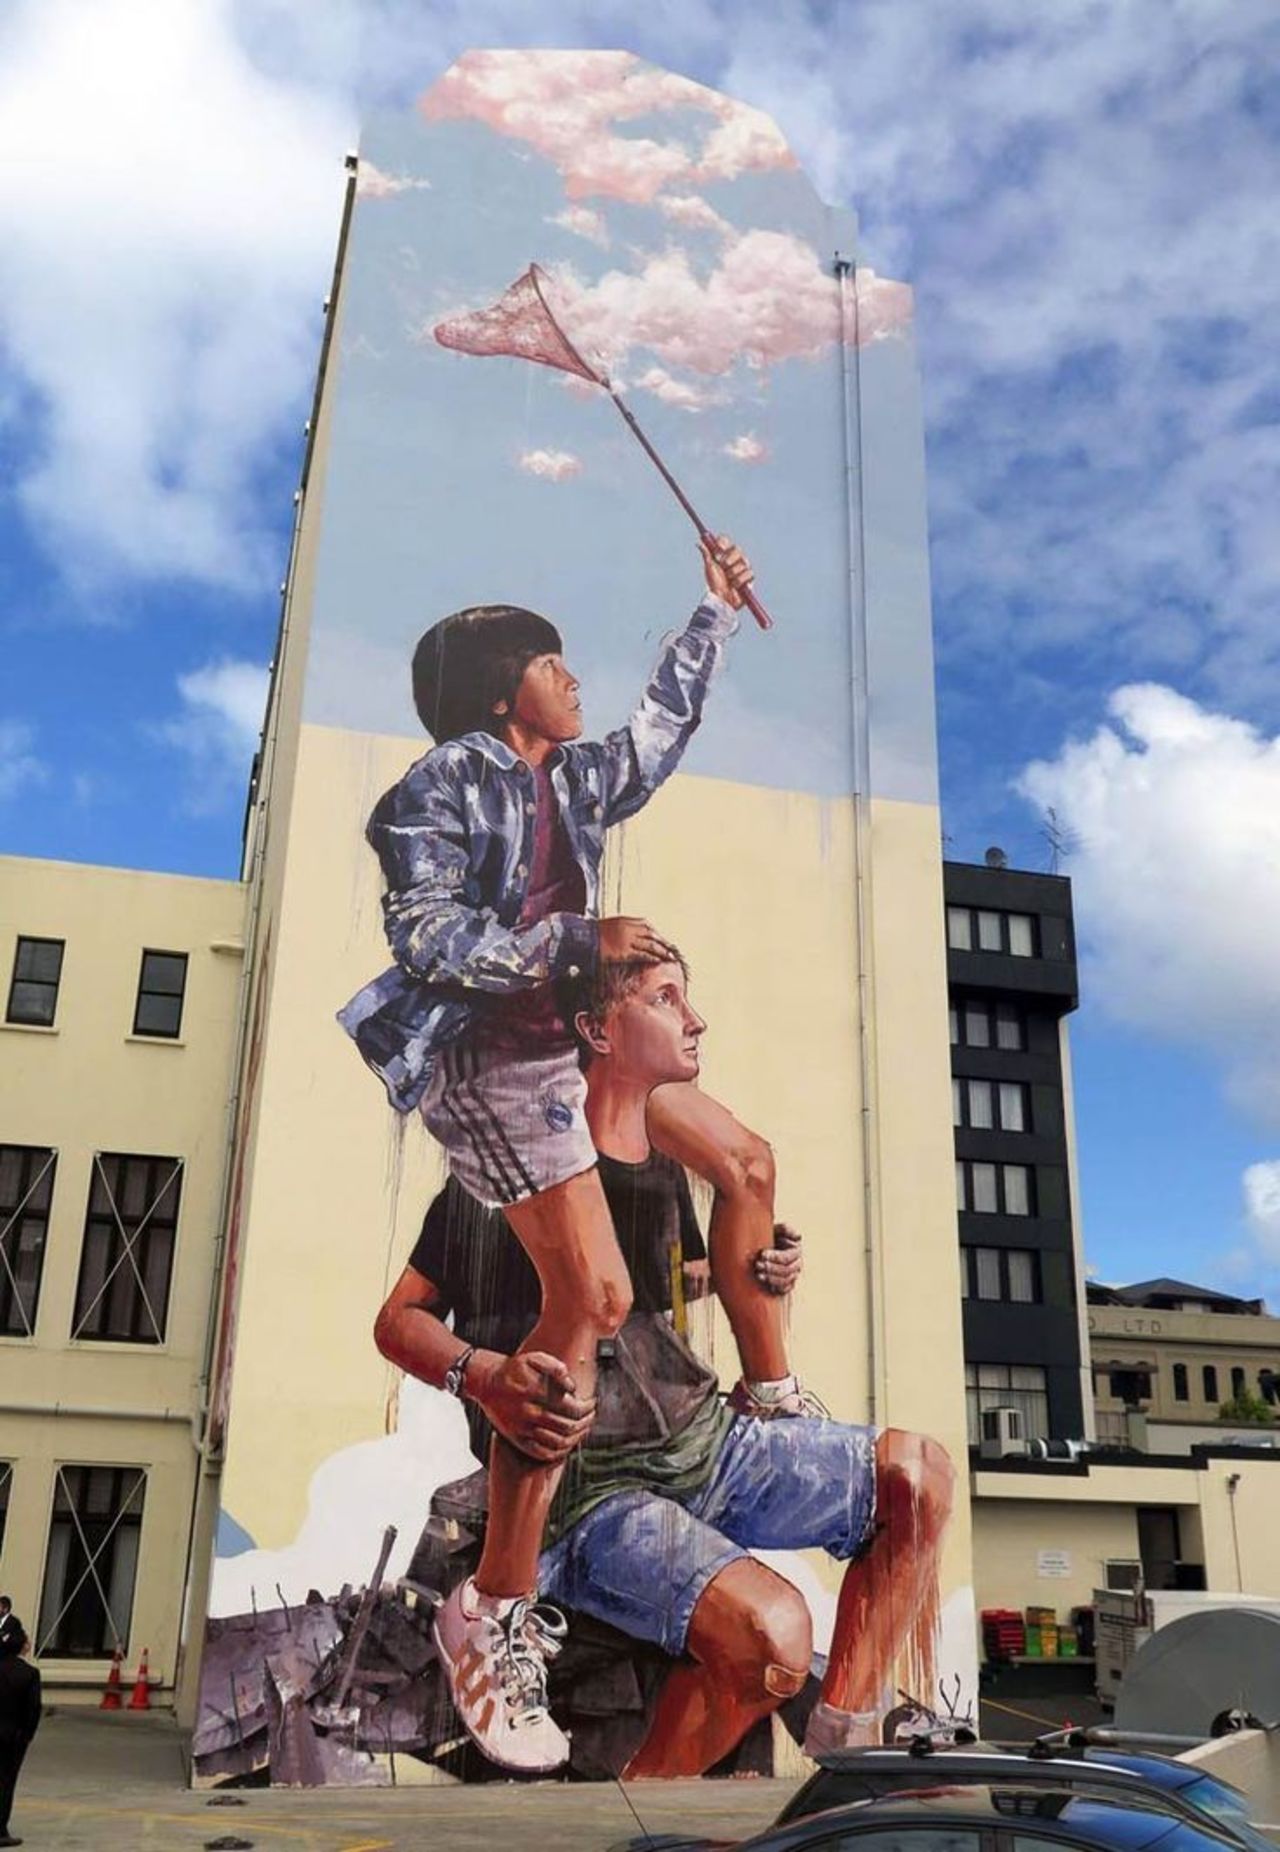 Fintan Magee#streetart #mural #graffiti #art https://t.co/5UDqE8PbWg